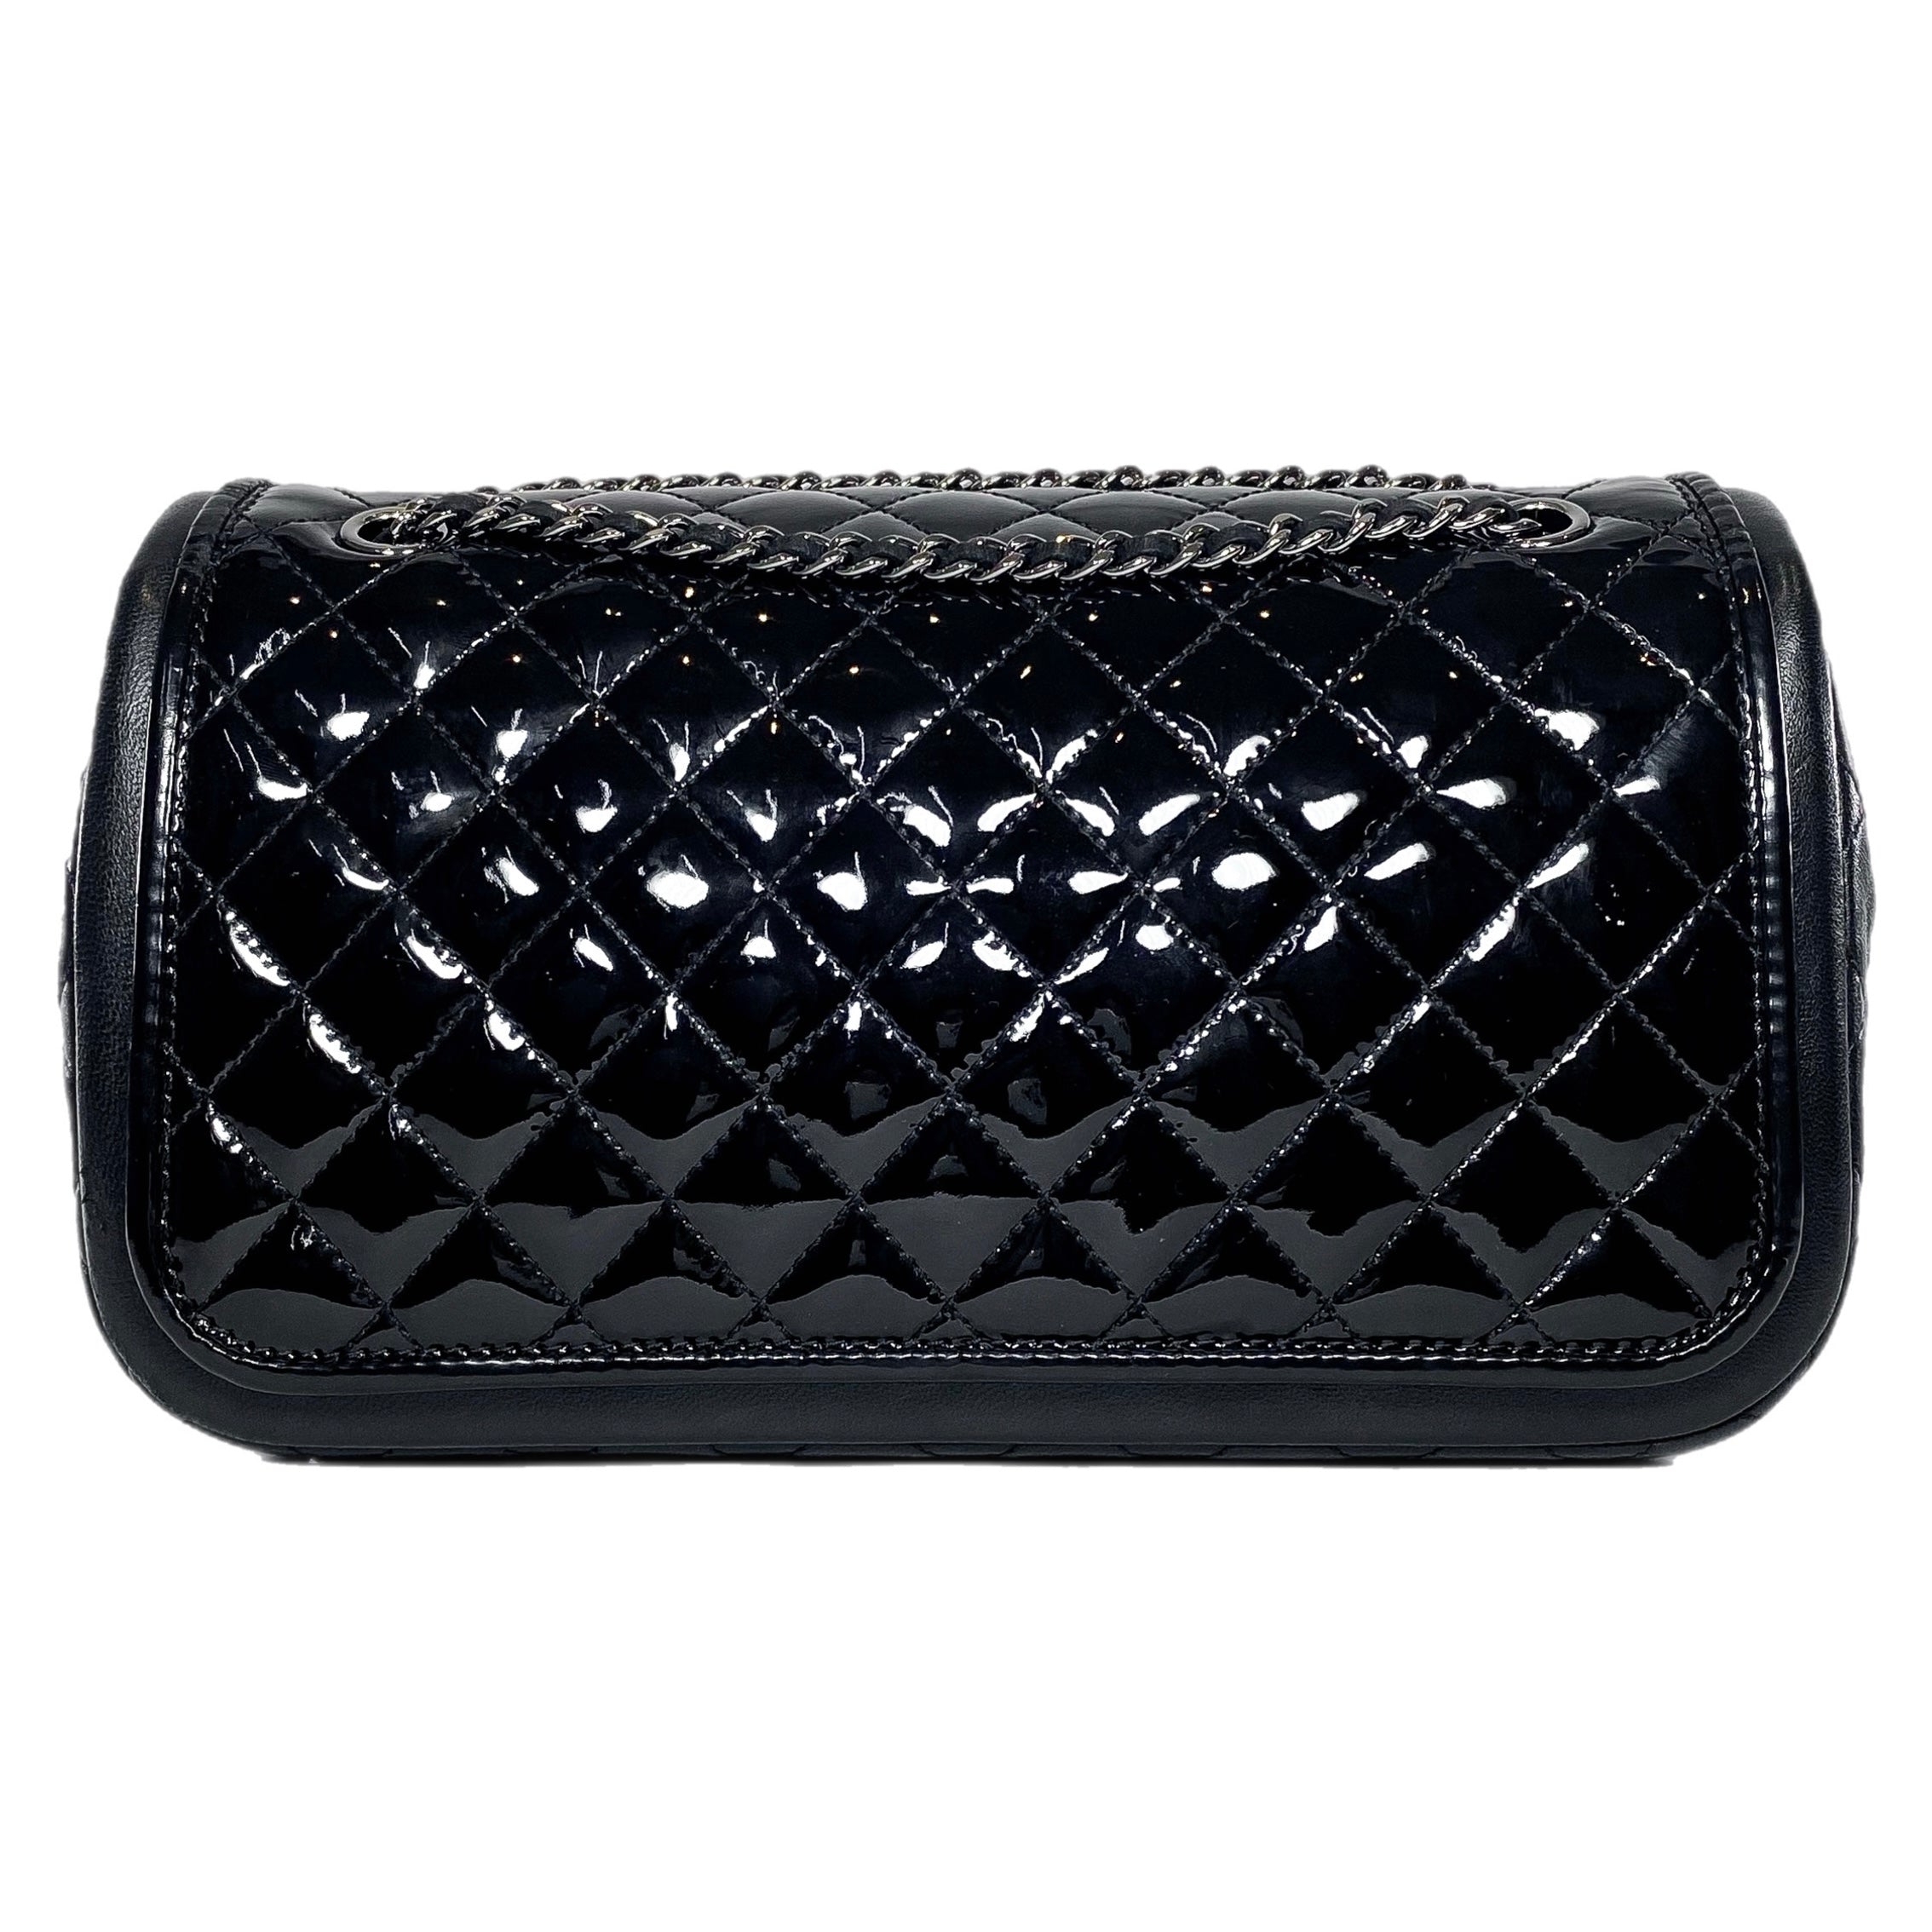 Chanel Black Patent Lambskin Medium Twist Flap Bag